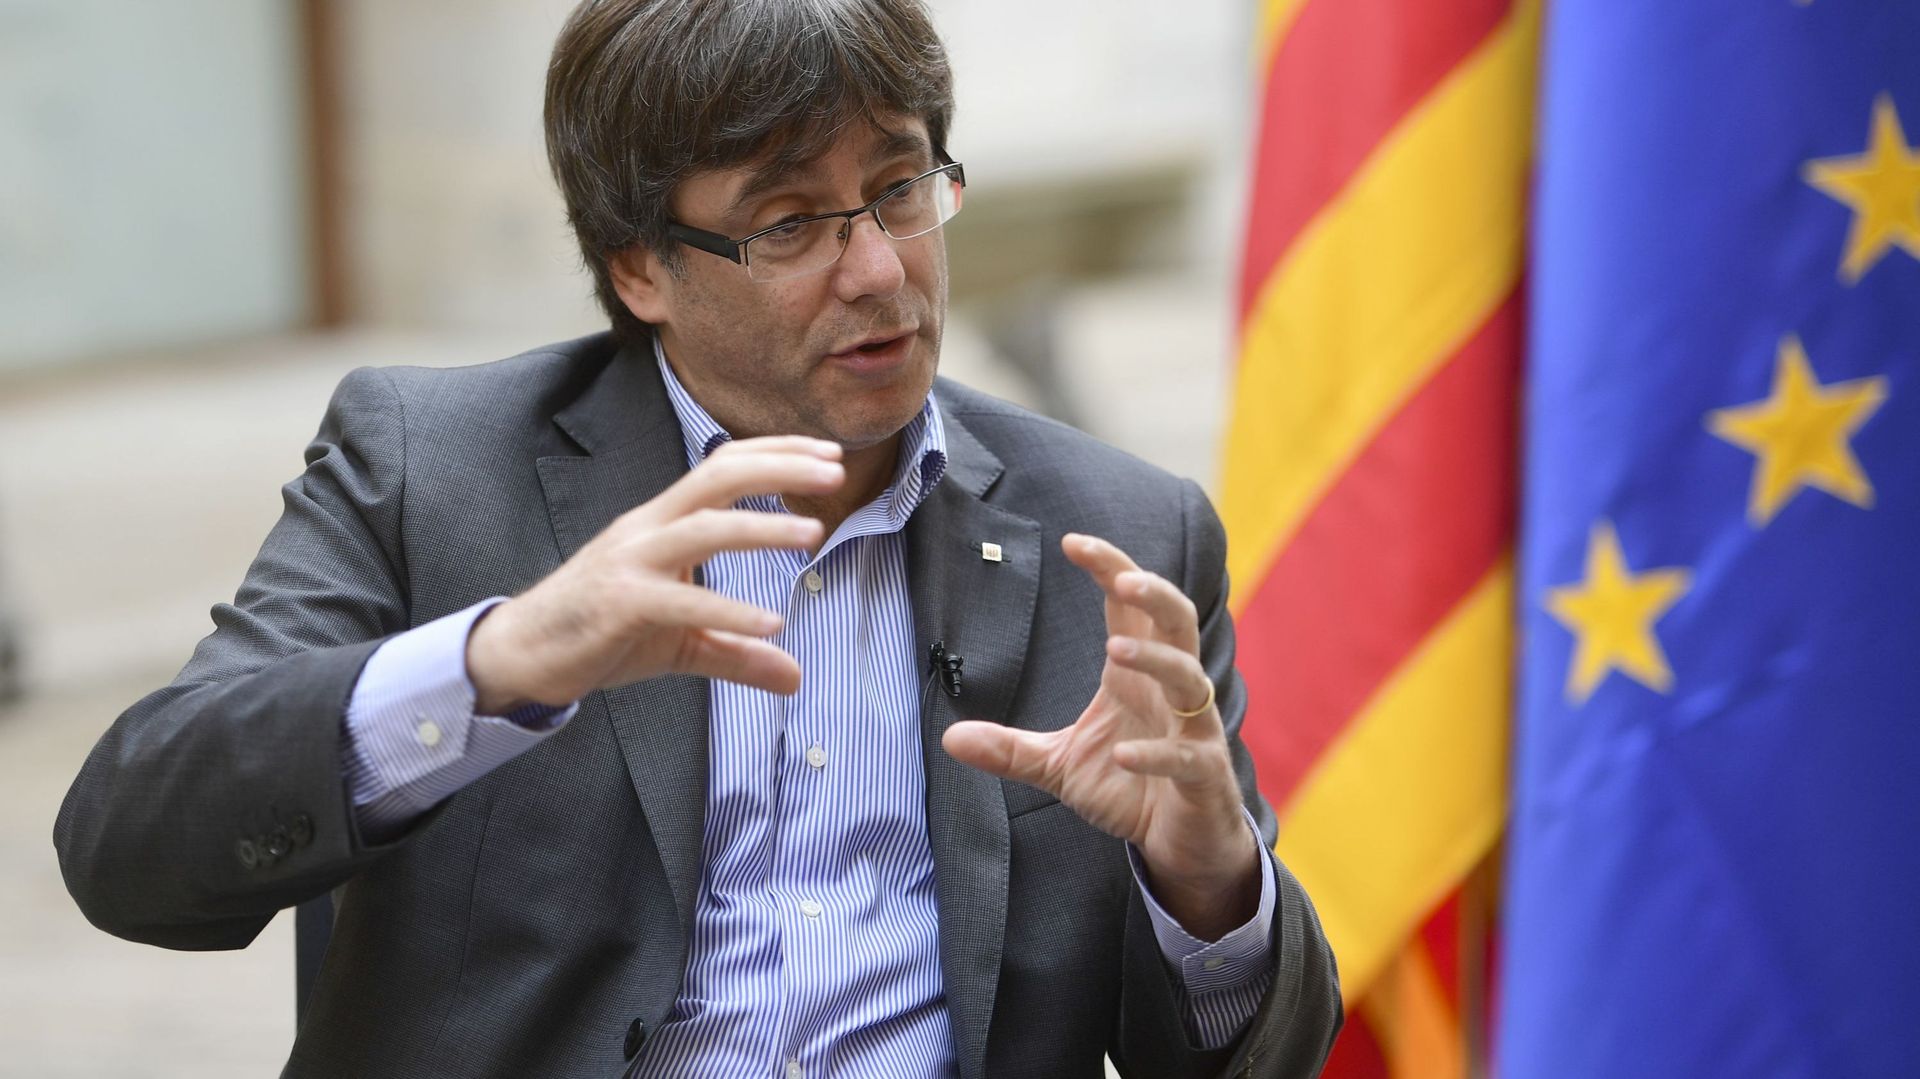 Le président régional catalan veut une "médiation" pour résoudre le conflit avec Madrid